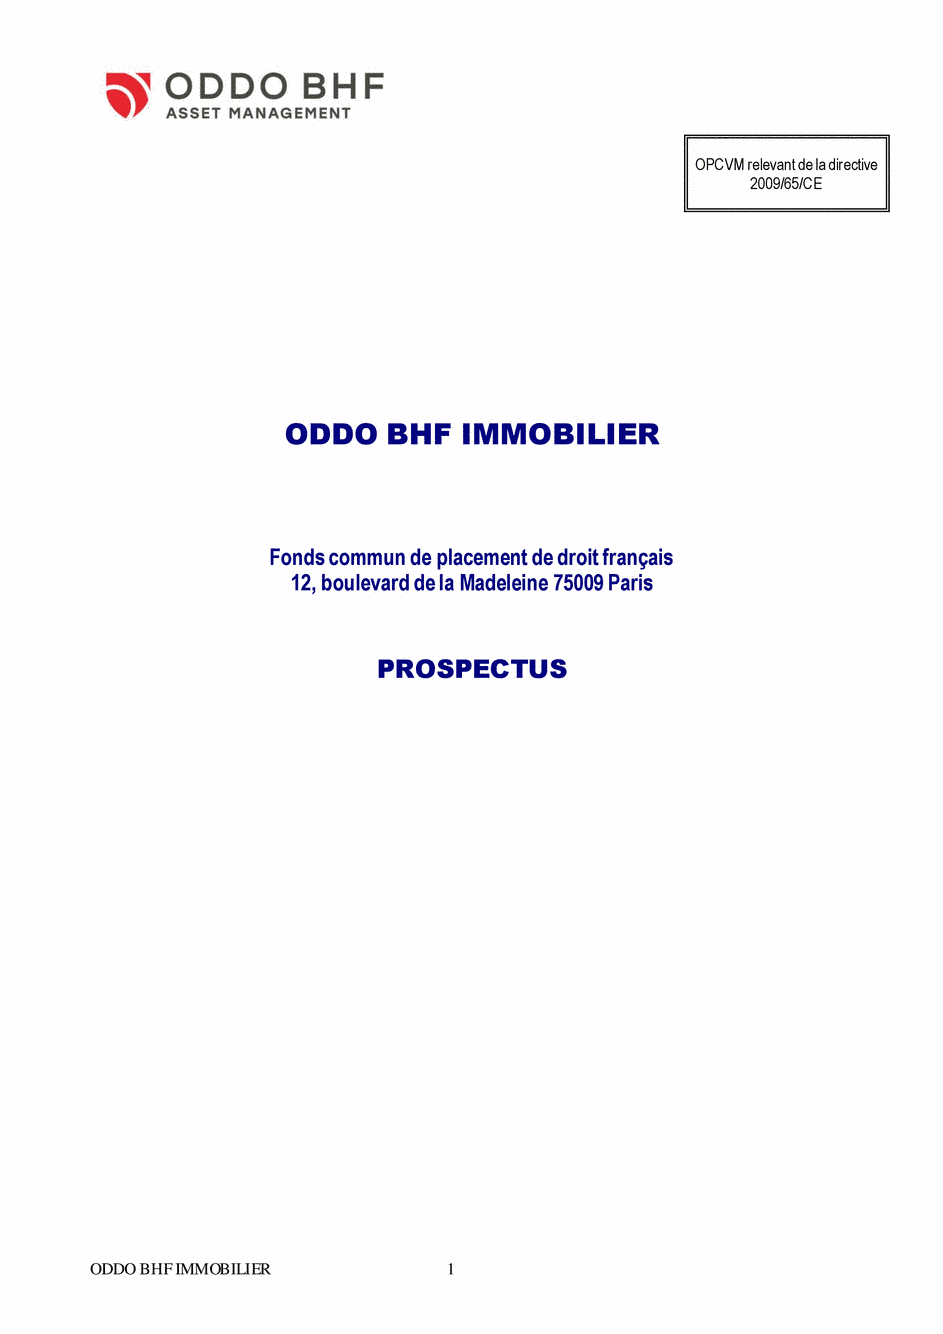 Prospectus ODDO BHF IMMOBILIER CR-EUR - 14/02/2020 - Français